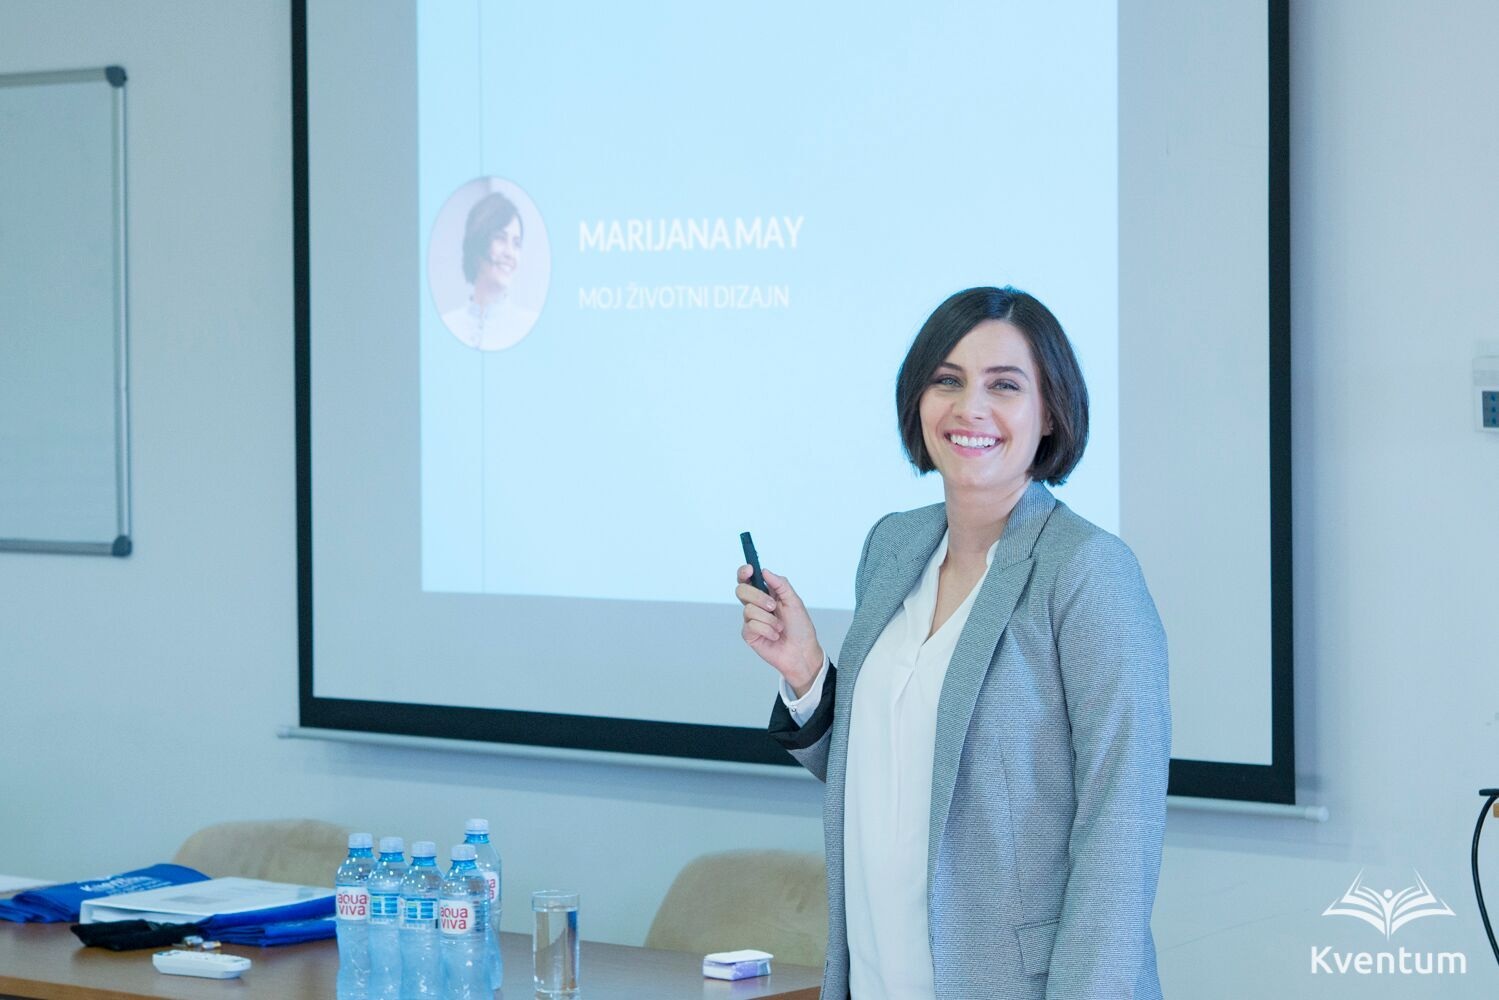 Održan seminar sa Marijanom May